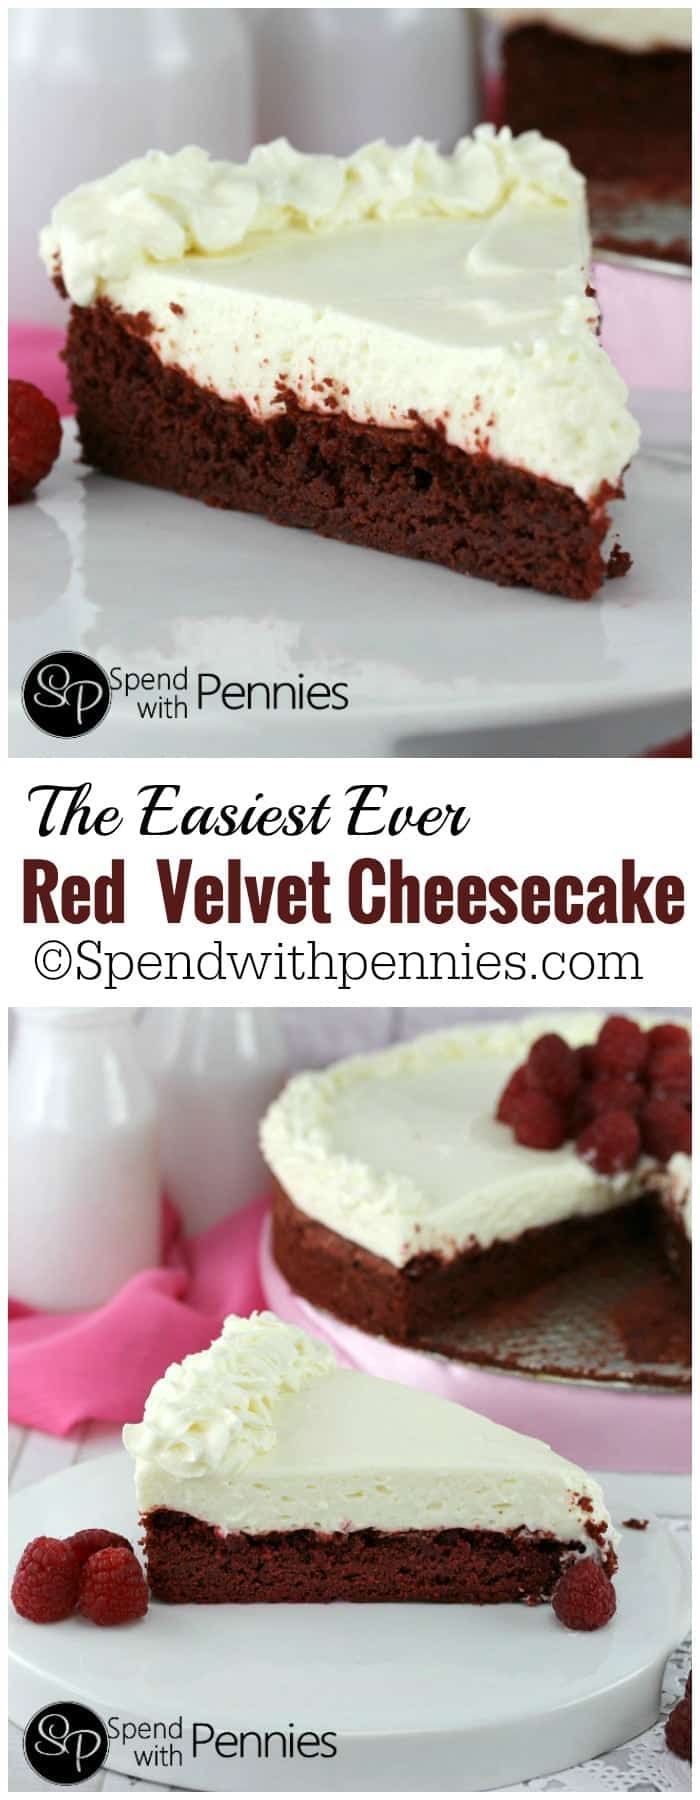 16 cake Red Velvet cheesecake ideas